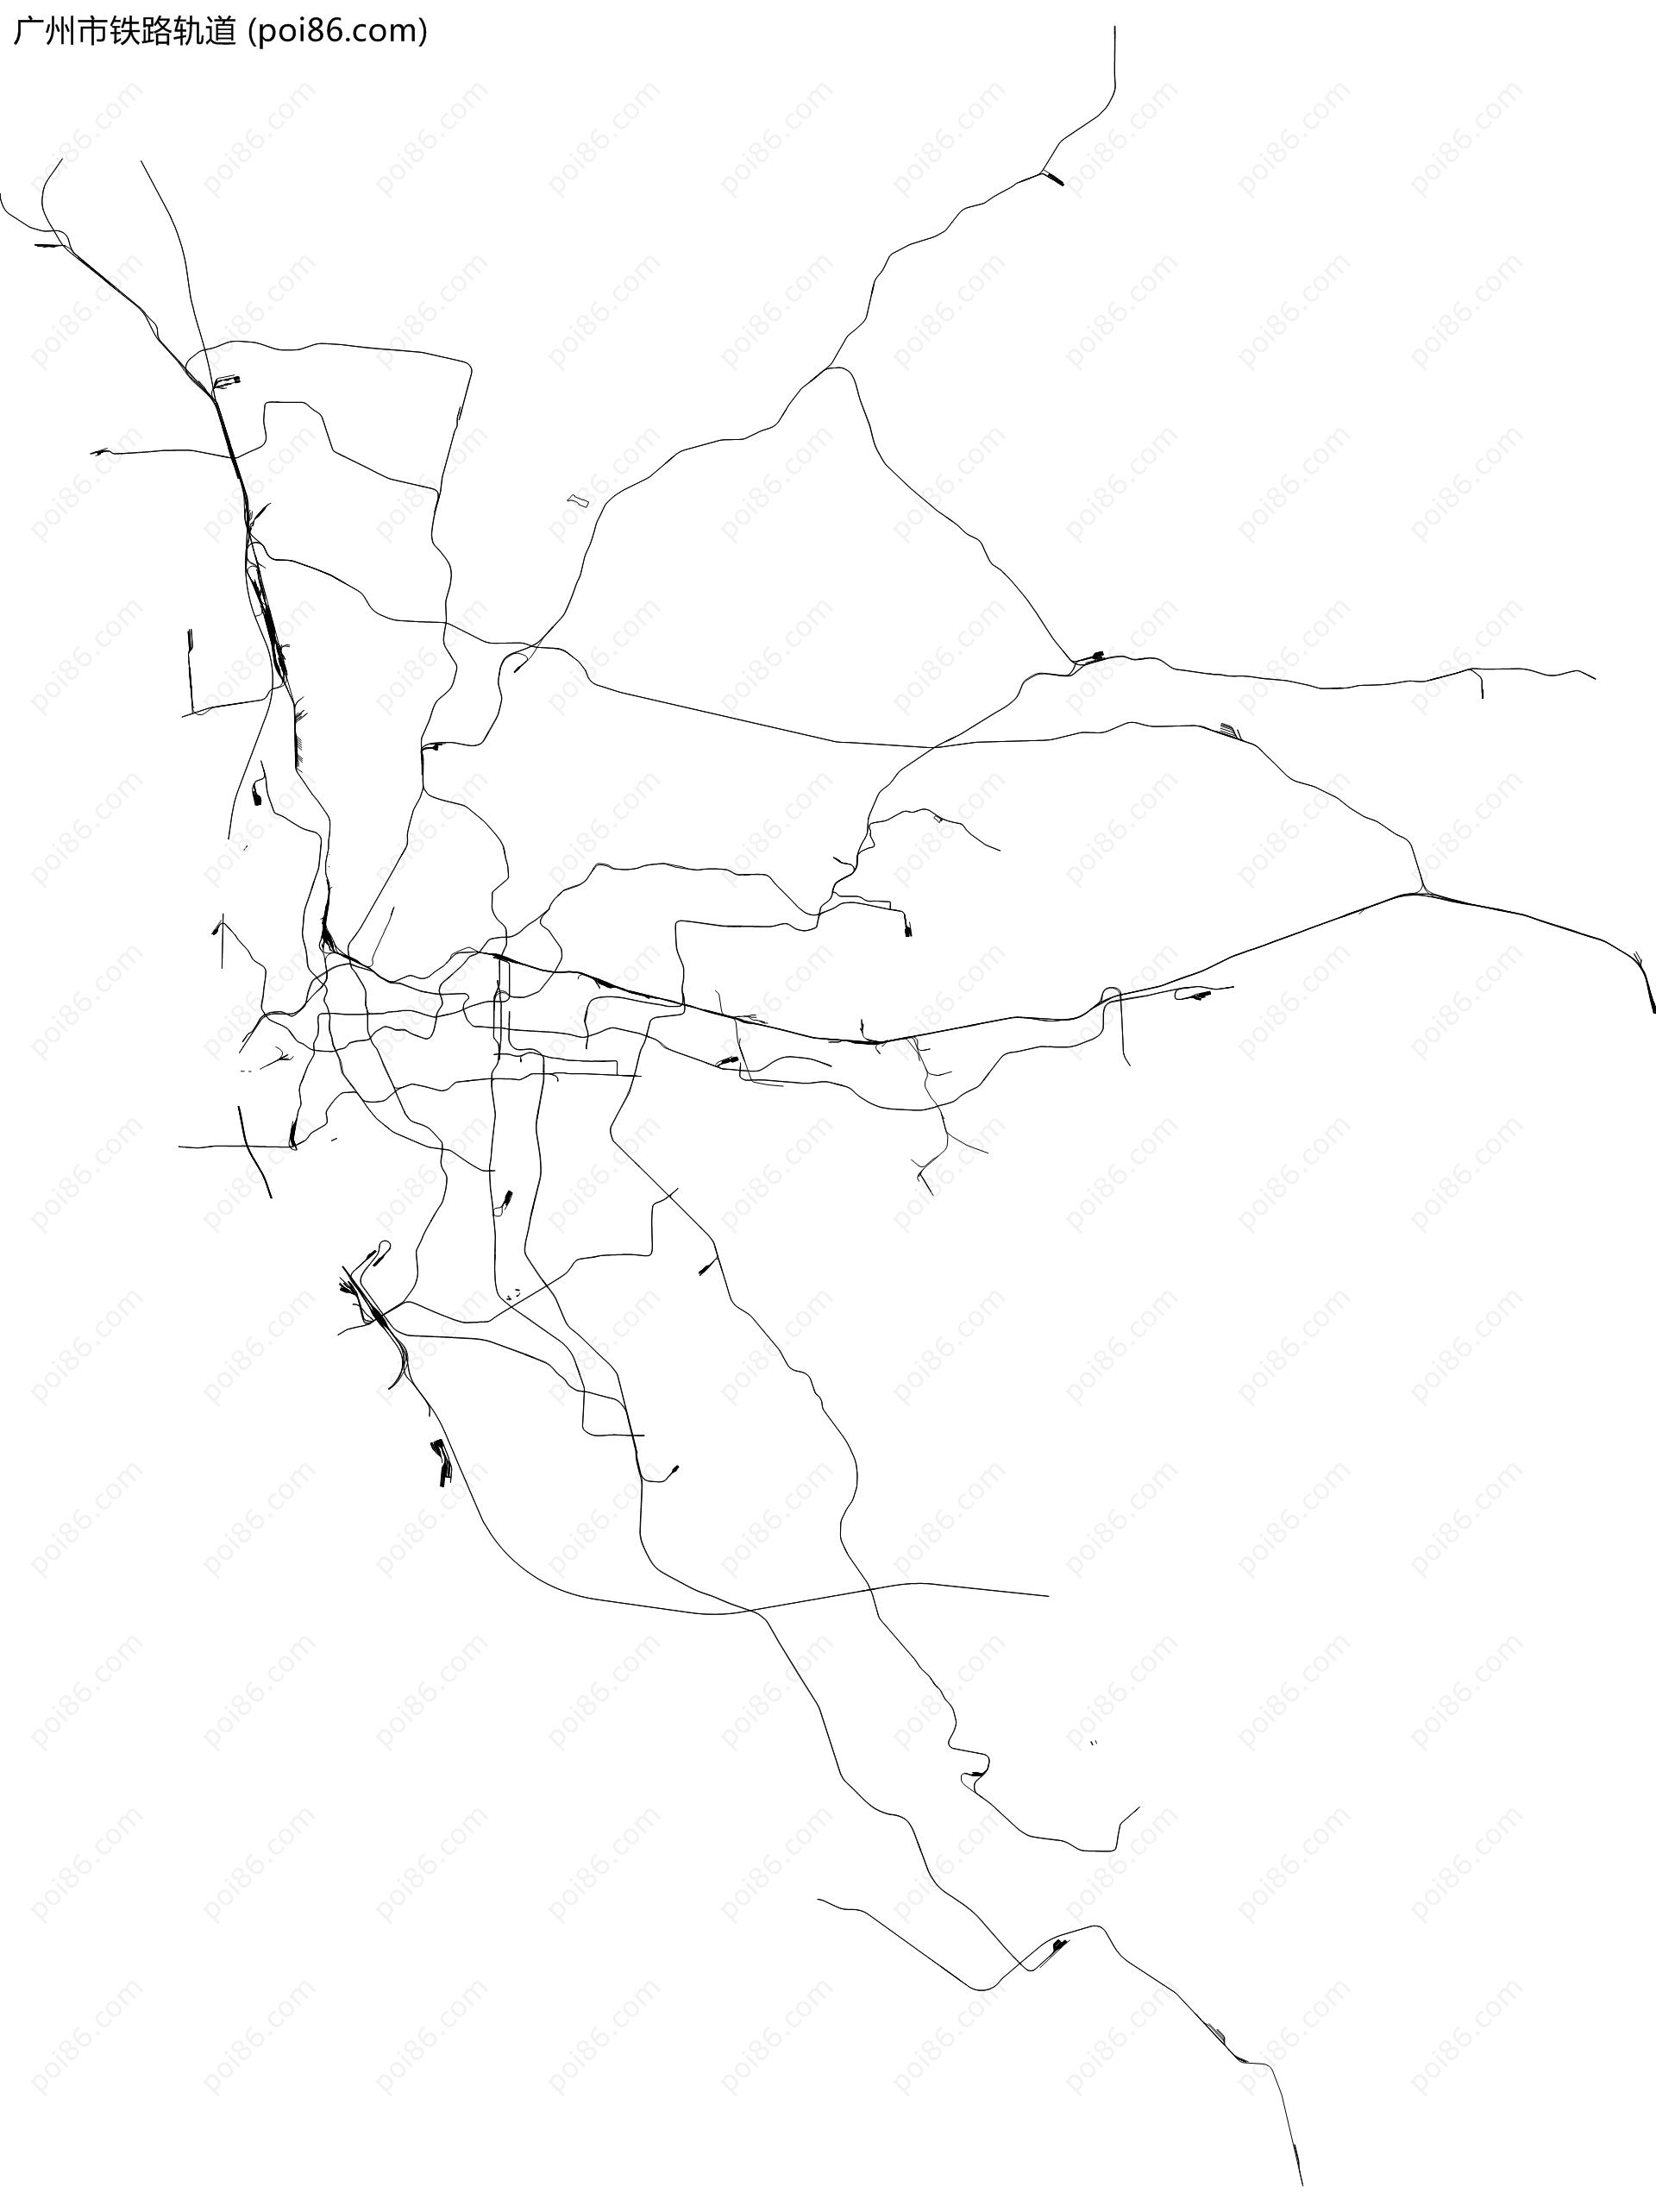 广州市铁路轨道地图